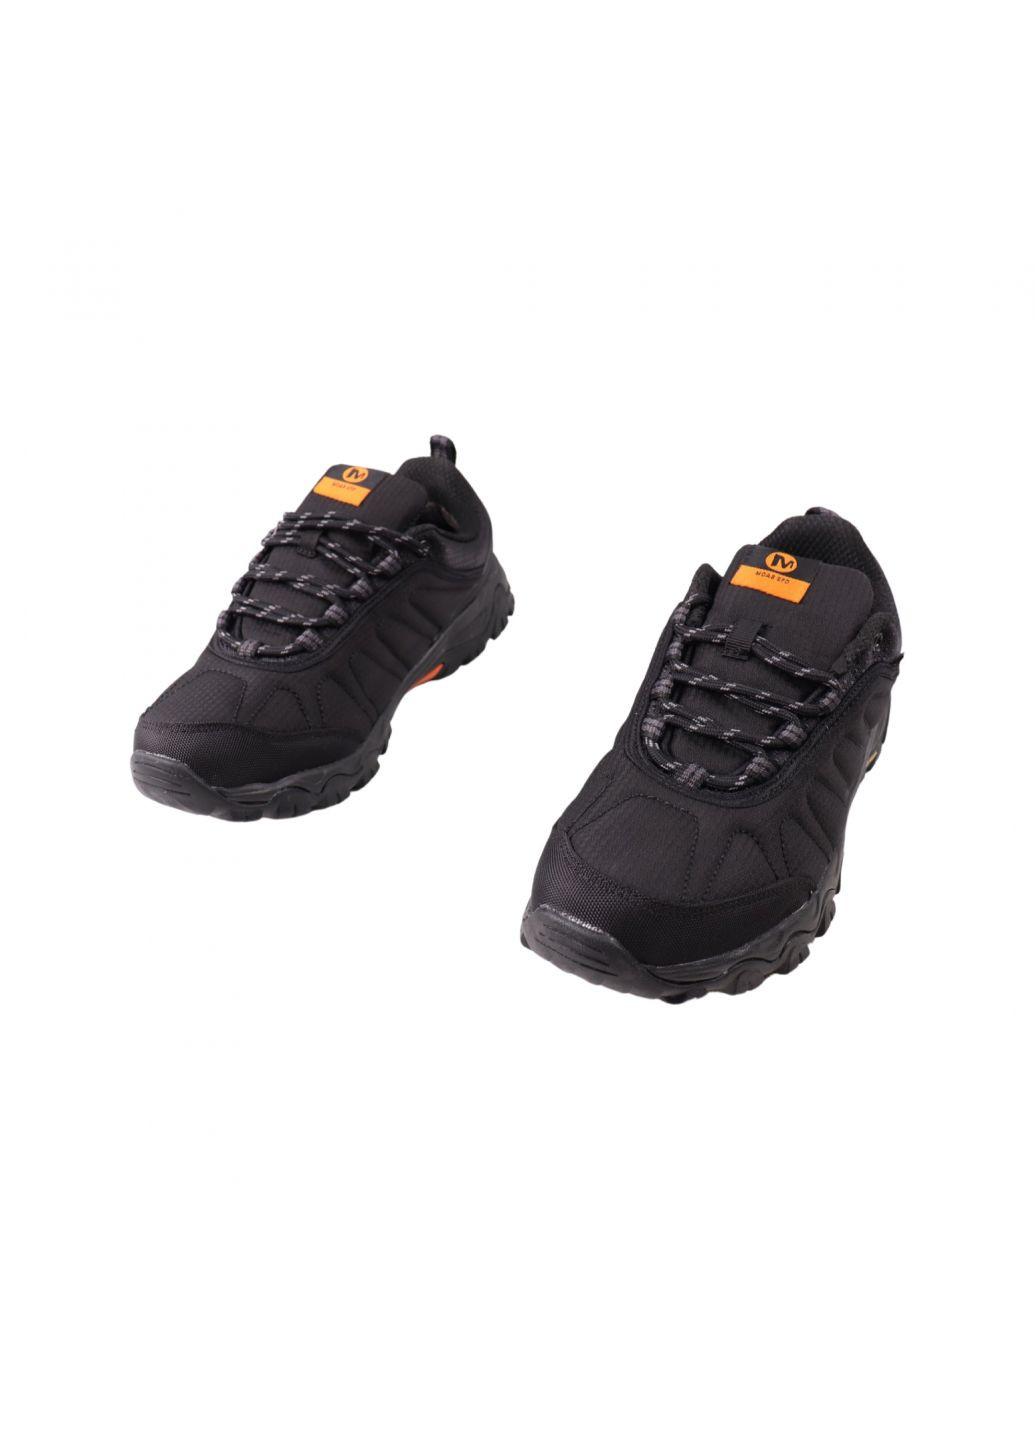 Черные кроссовки мужские черные текстиль Merrell 44-23DK